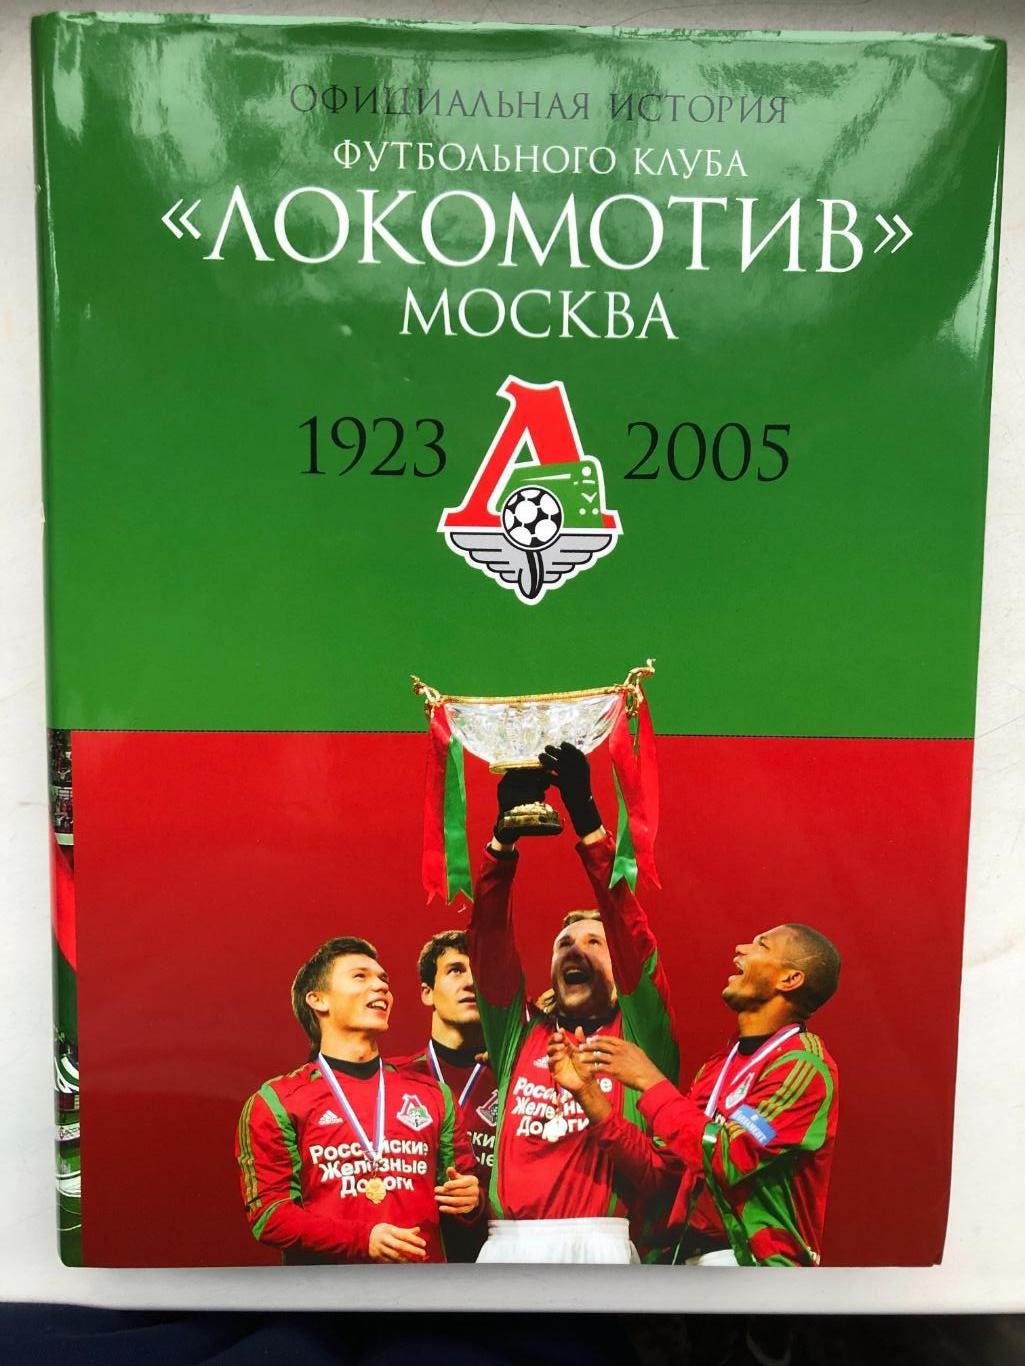 Официальная история ФК Локомотив Москва 1923 - 2005 размер 22 Х 29 см